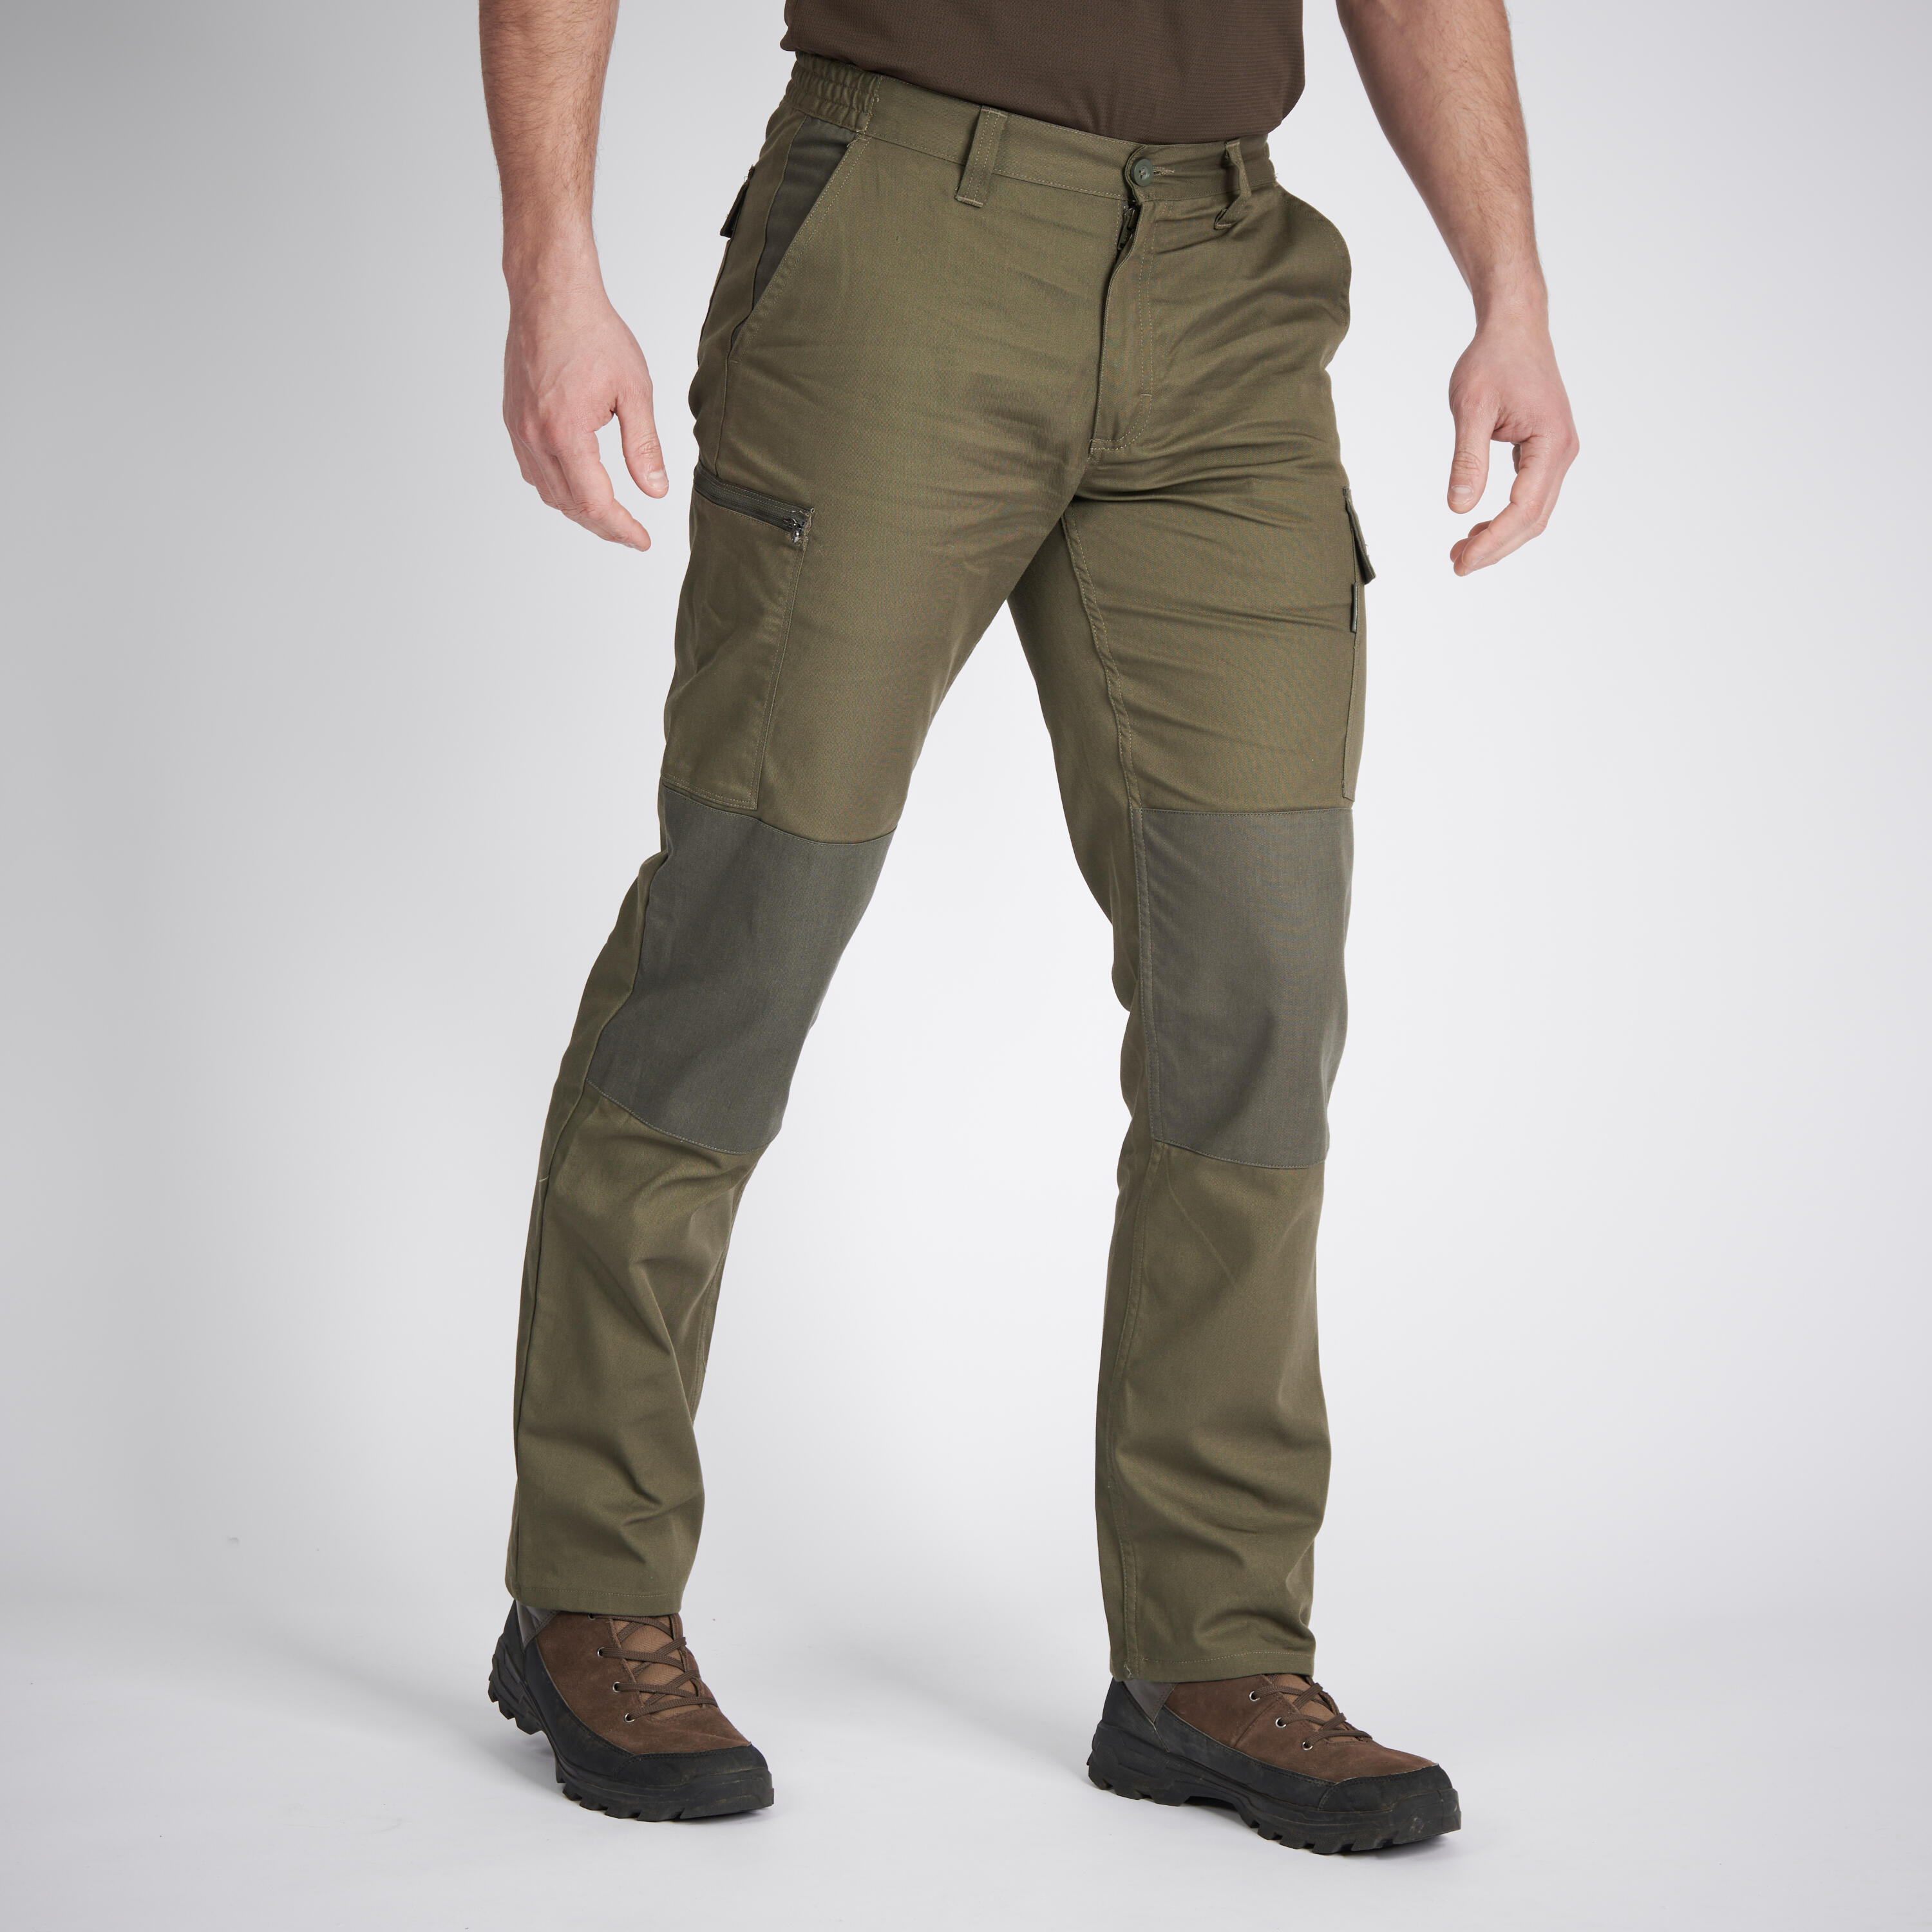 Pantalon cargo résistant - Steppe 300 bicolore - SOLOGNAC